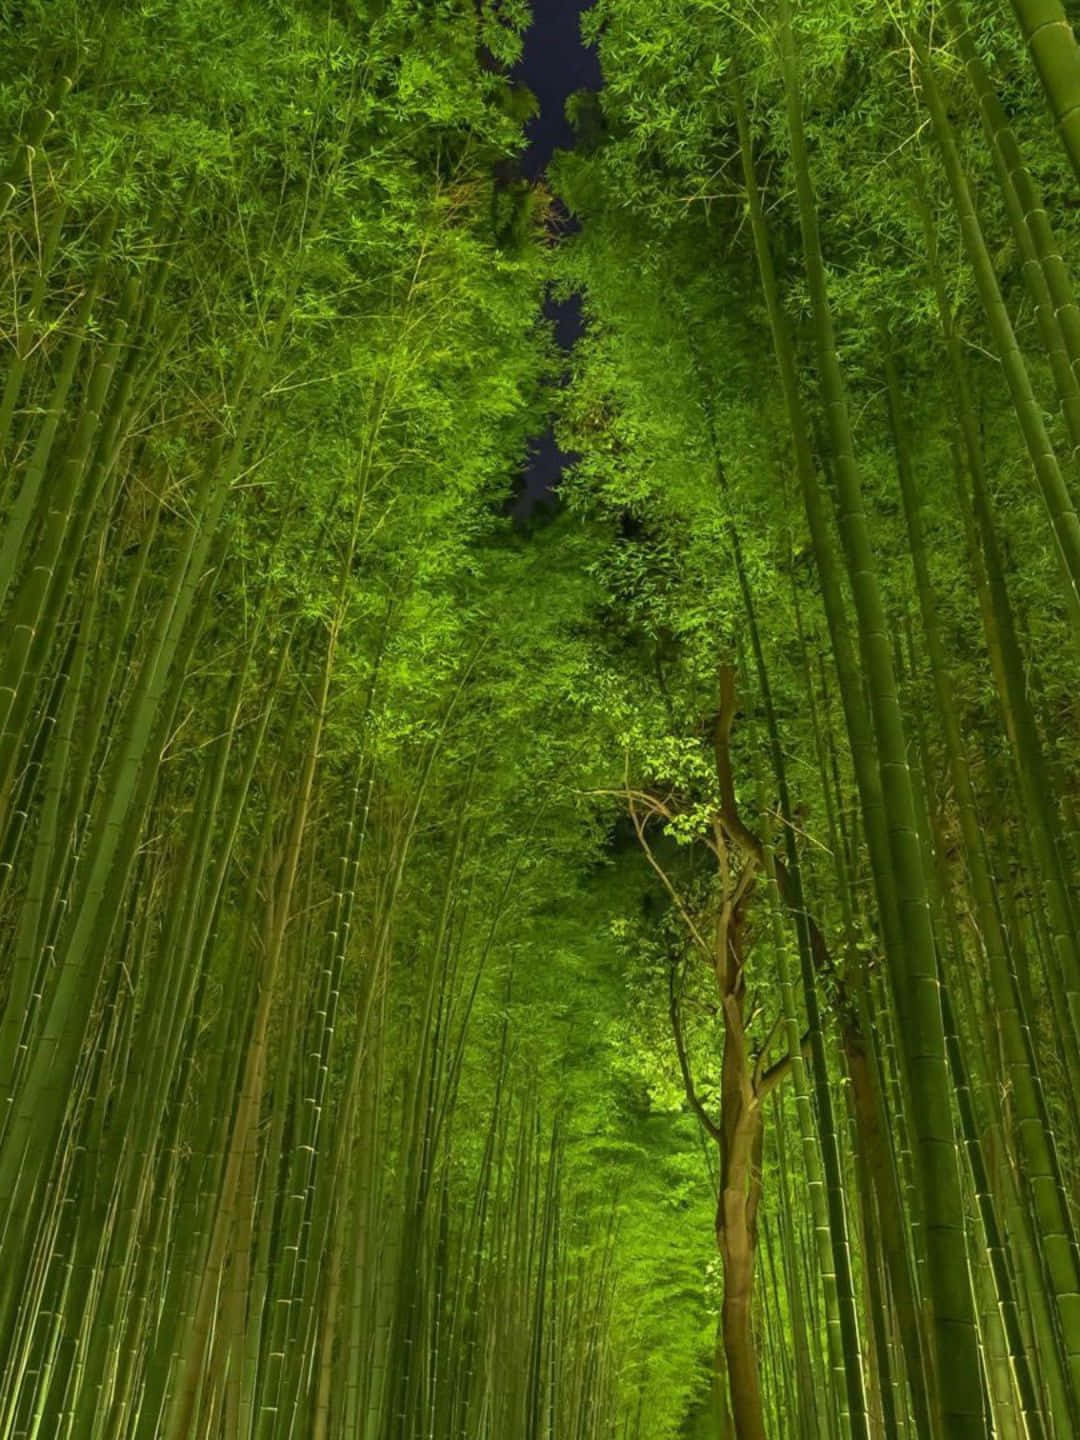 Sfondodi Bambù Ripreso Di Notte, In Risoluzione 1440p.